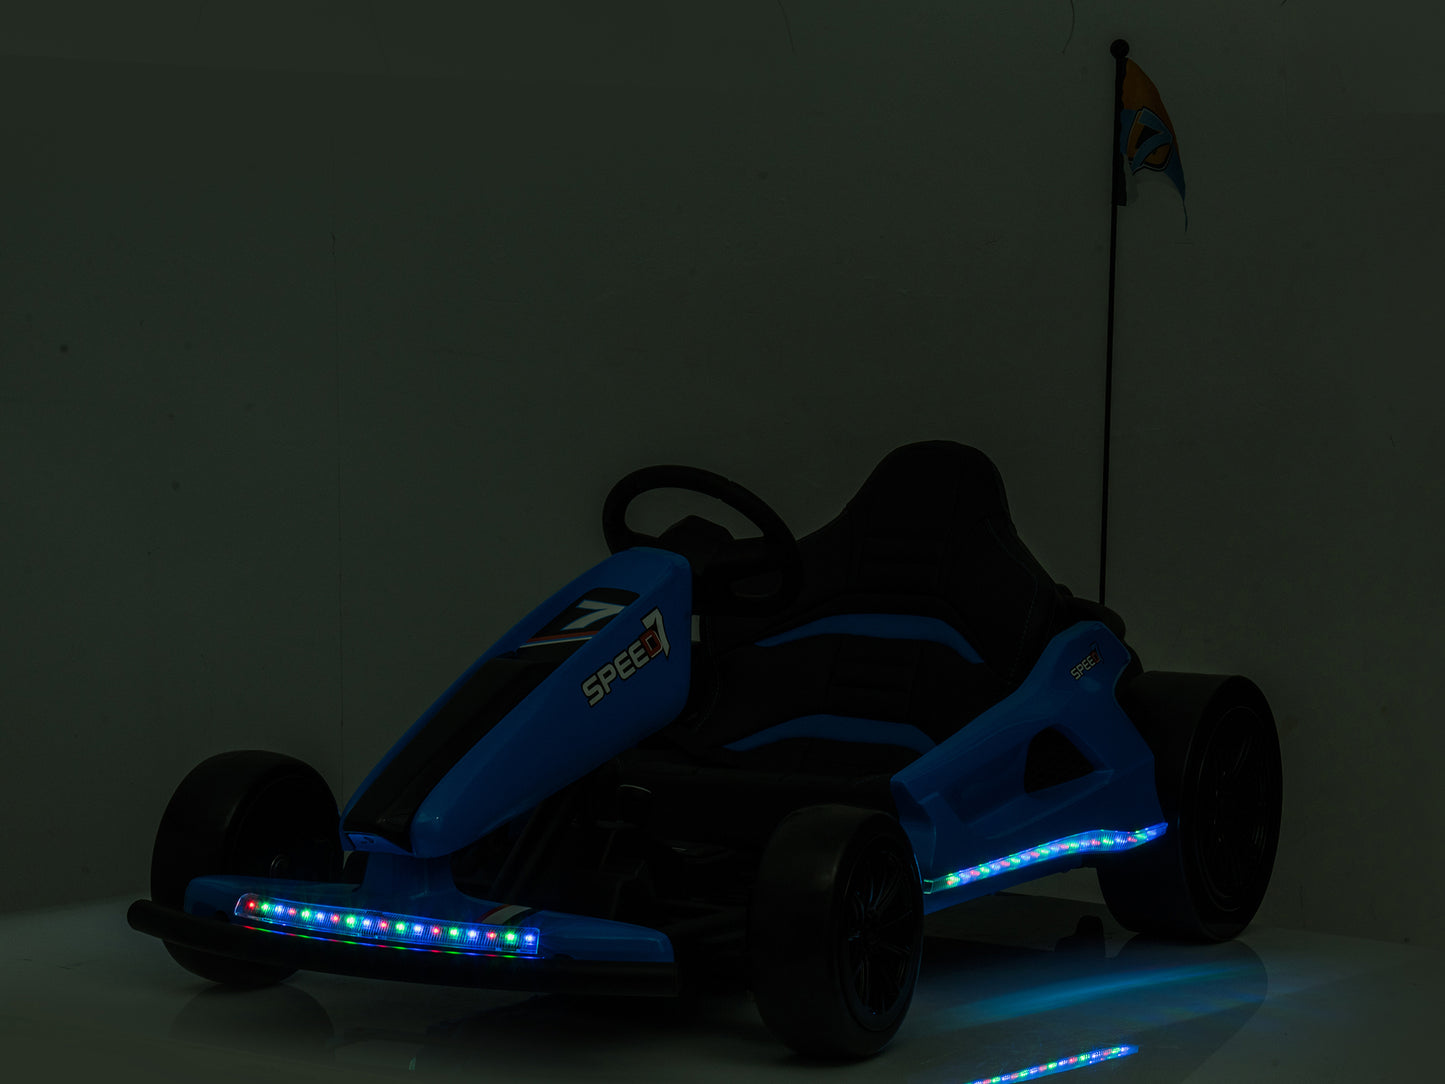 24V TREKCAR Kids Electric Go-Kart with DRIFT Function - White